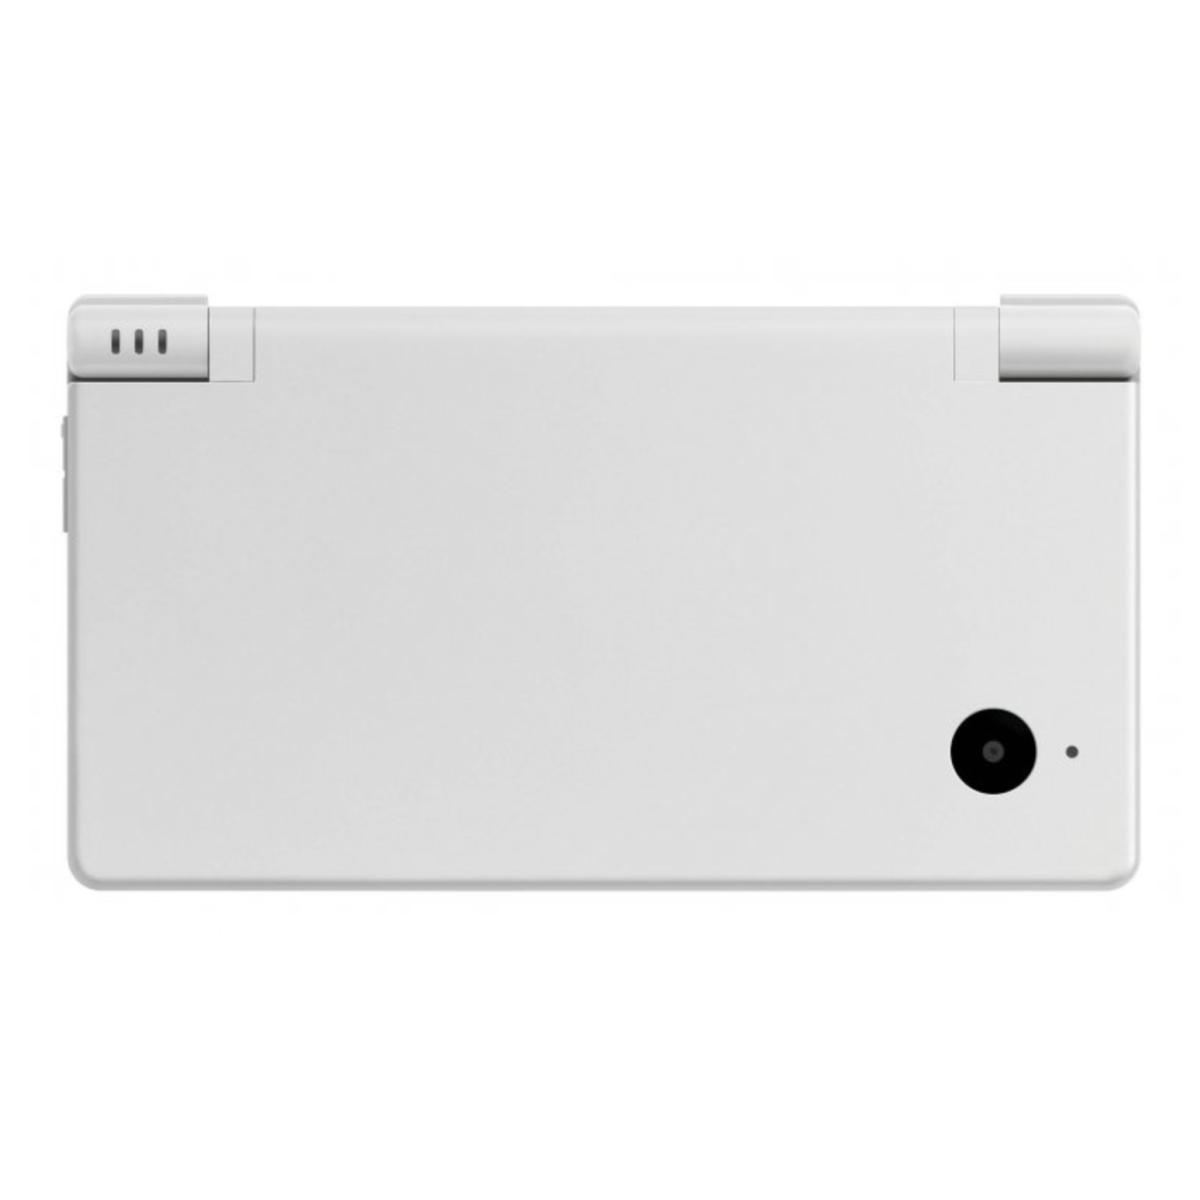 Nintendo DSi fehér doboz nélkül - 2